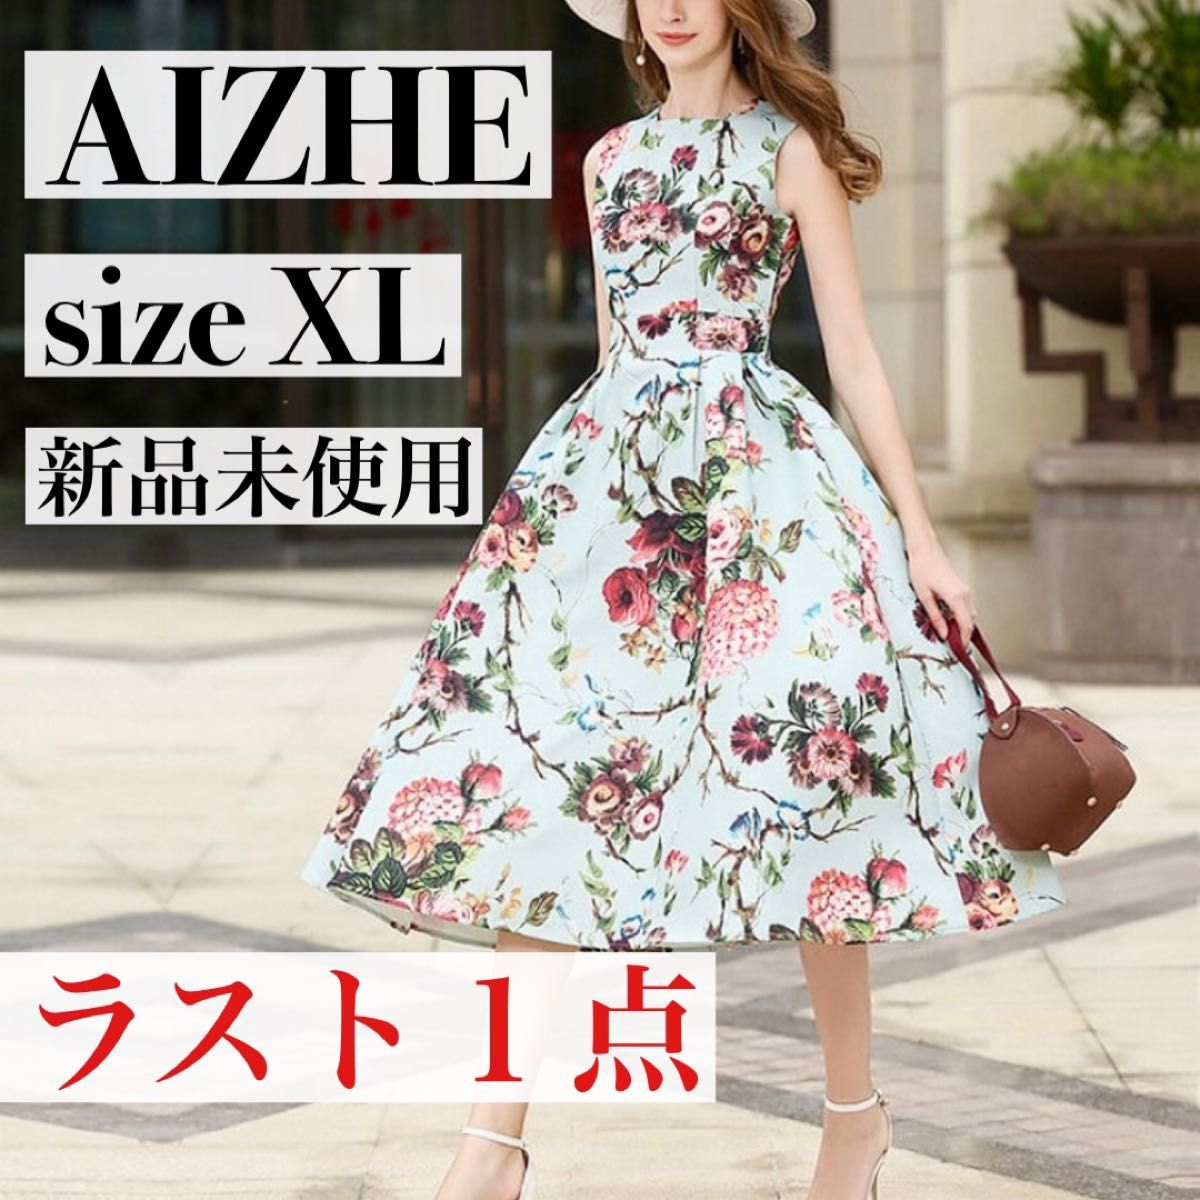 【新品未使用】AIZHE 高級感 ワンピース ロングワンピース 花柄 フローラルプリント パーティードレス 大きいサイズ XL